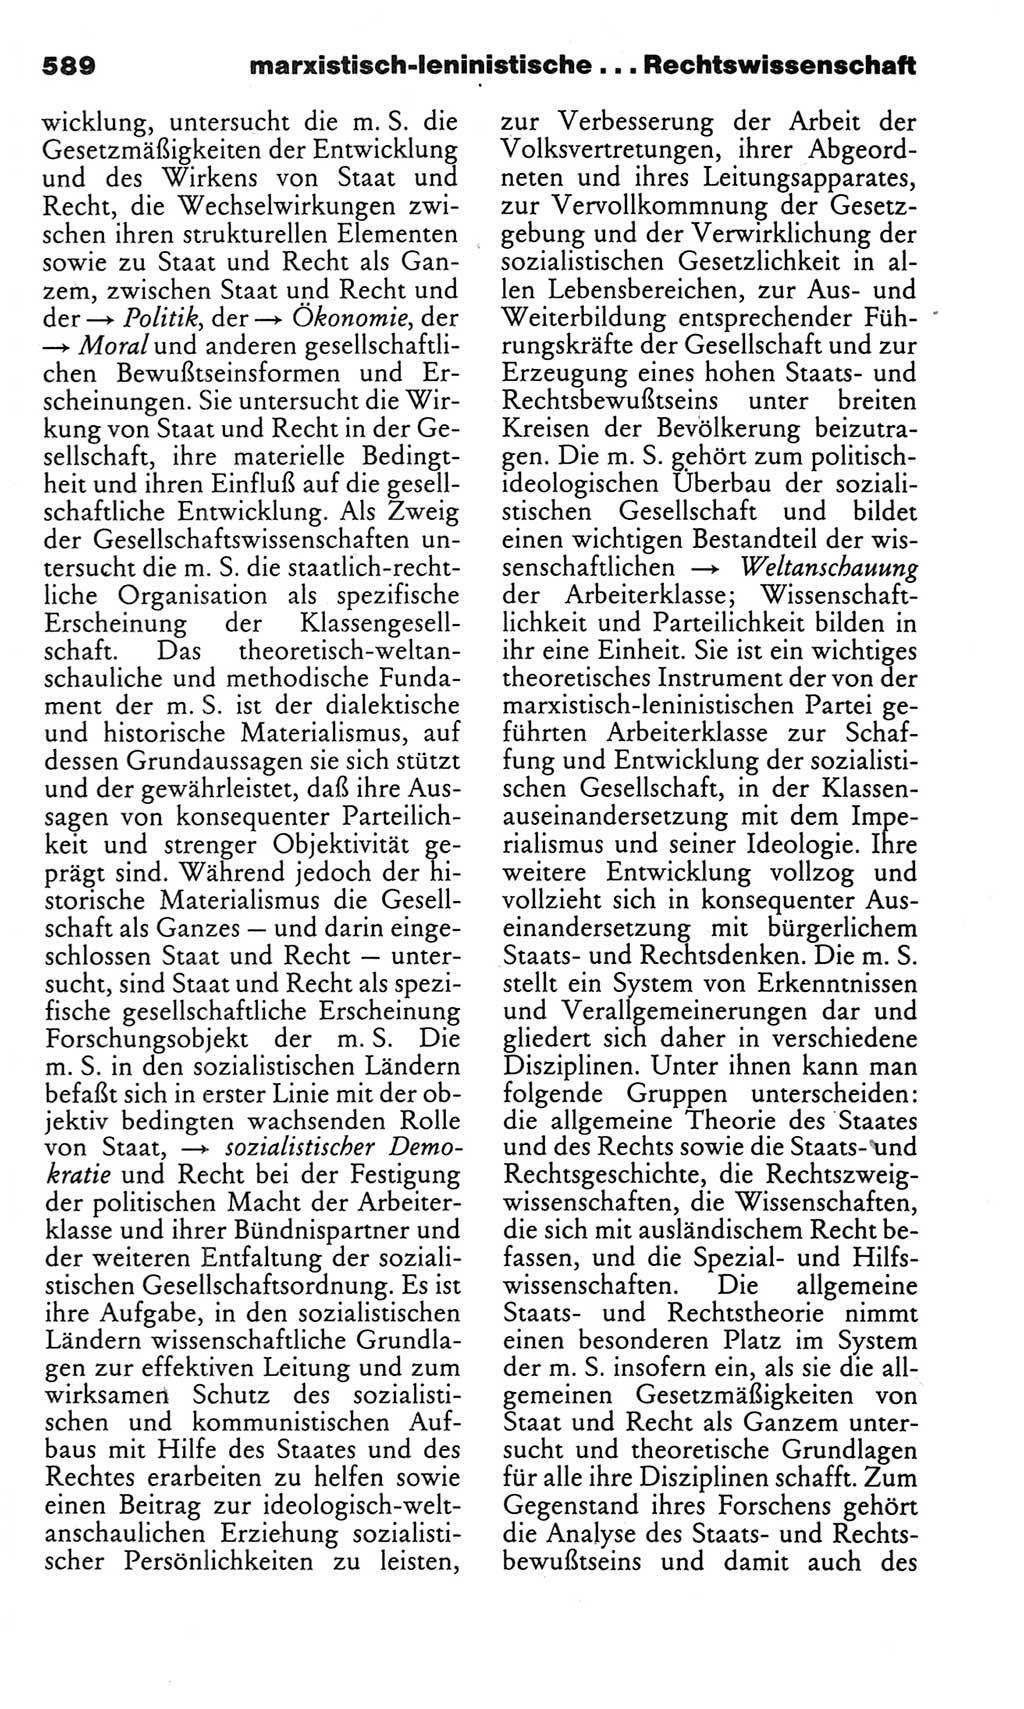 Kleines politisches Wörterbuch [Deutsche Demokratische Republik (DDR)] 1983, Seite 589 (Kl. pol. Wb. DDR 1983, S. 589)